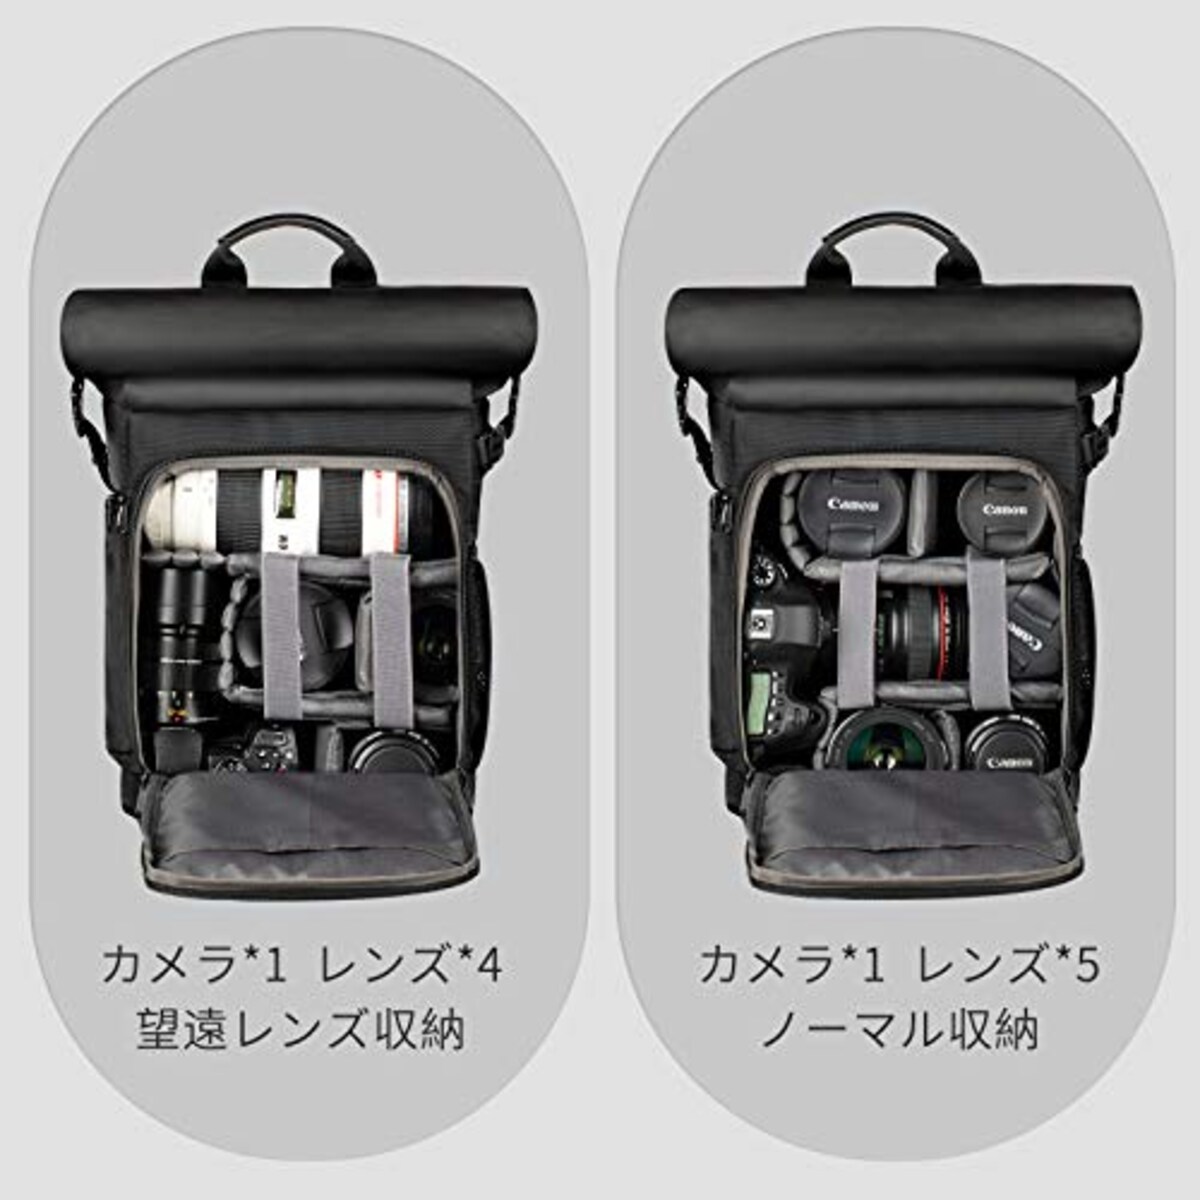  TARION カメラバッグ 2023年 分離式パソコン収納バッグ付き サイドアクセス ロールトップ設計 大容量 容量拡張可 カメラバック 一眼レフバッグ 撥水加工 三脚収納 SP01 ブラック画像3 